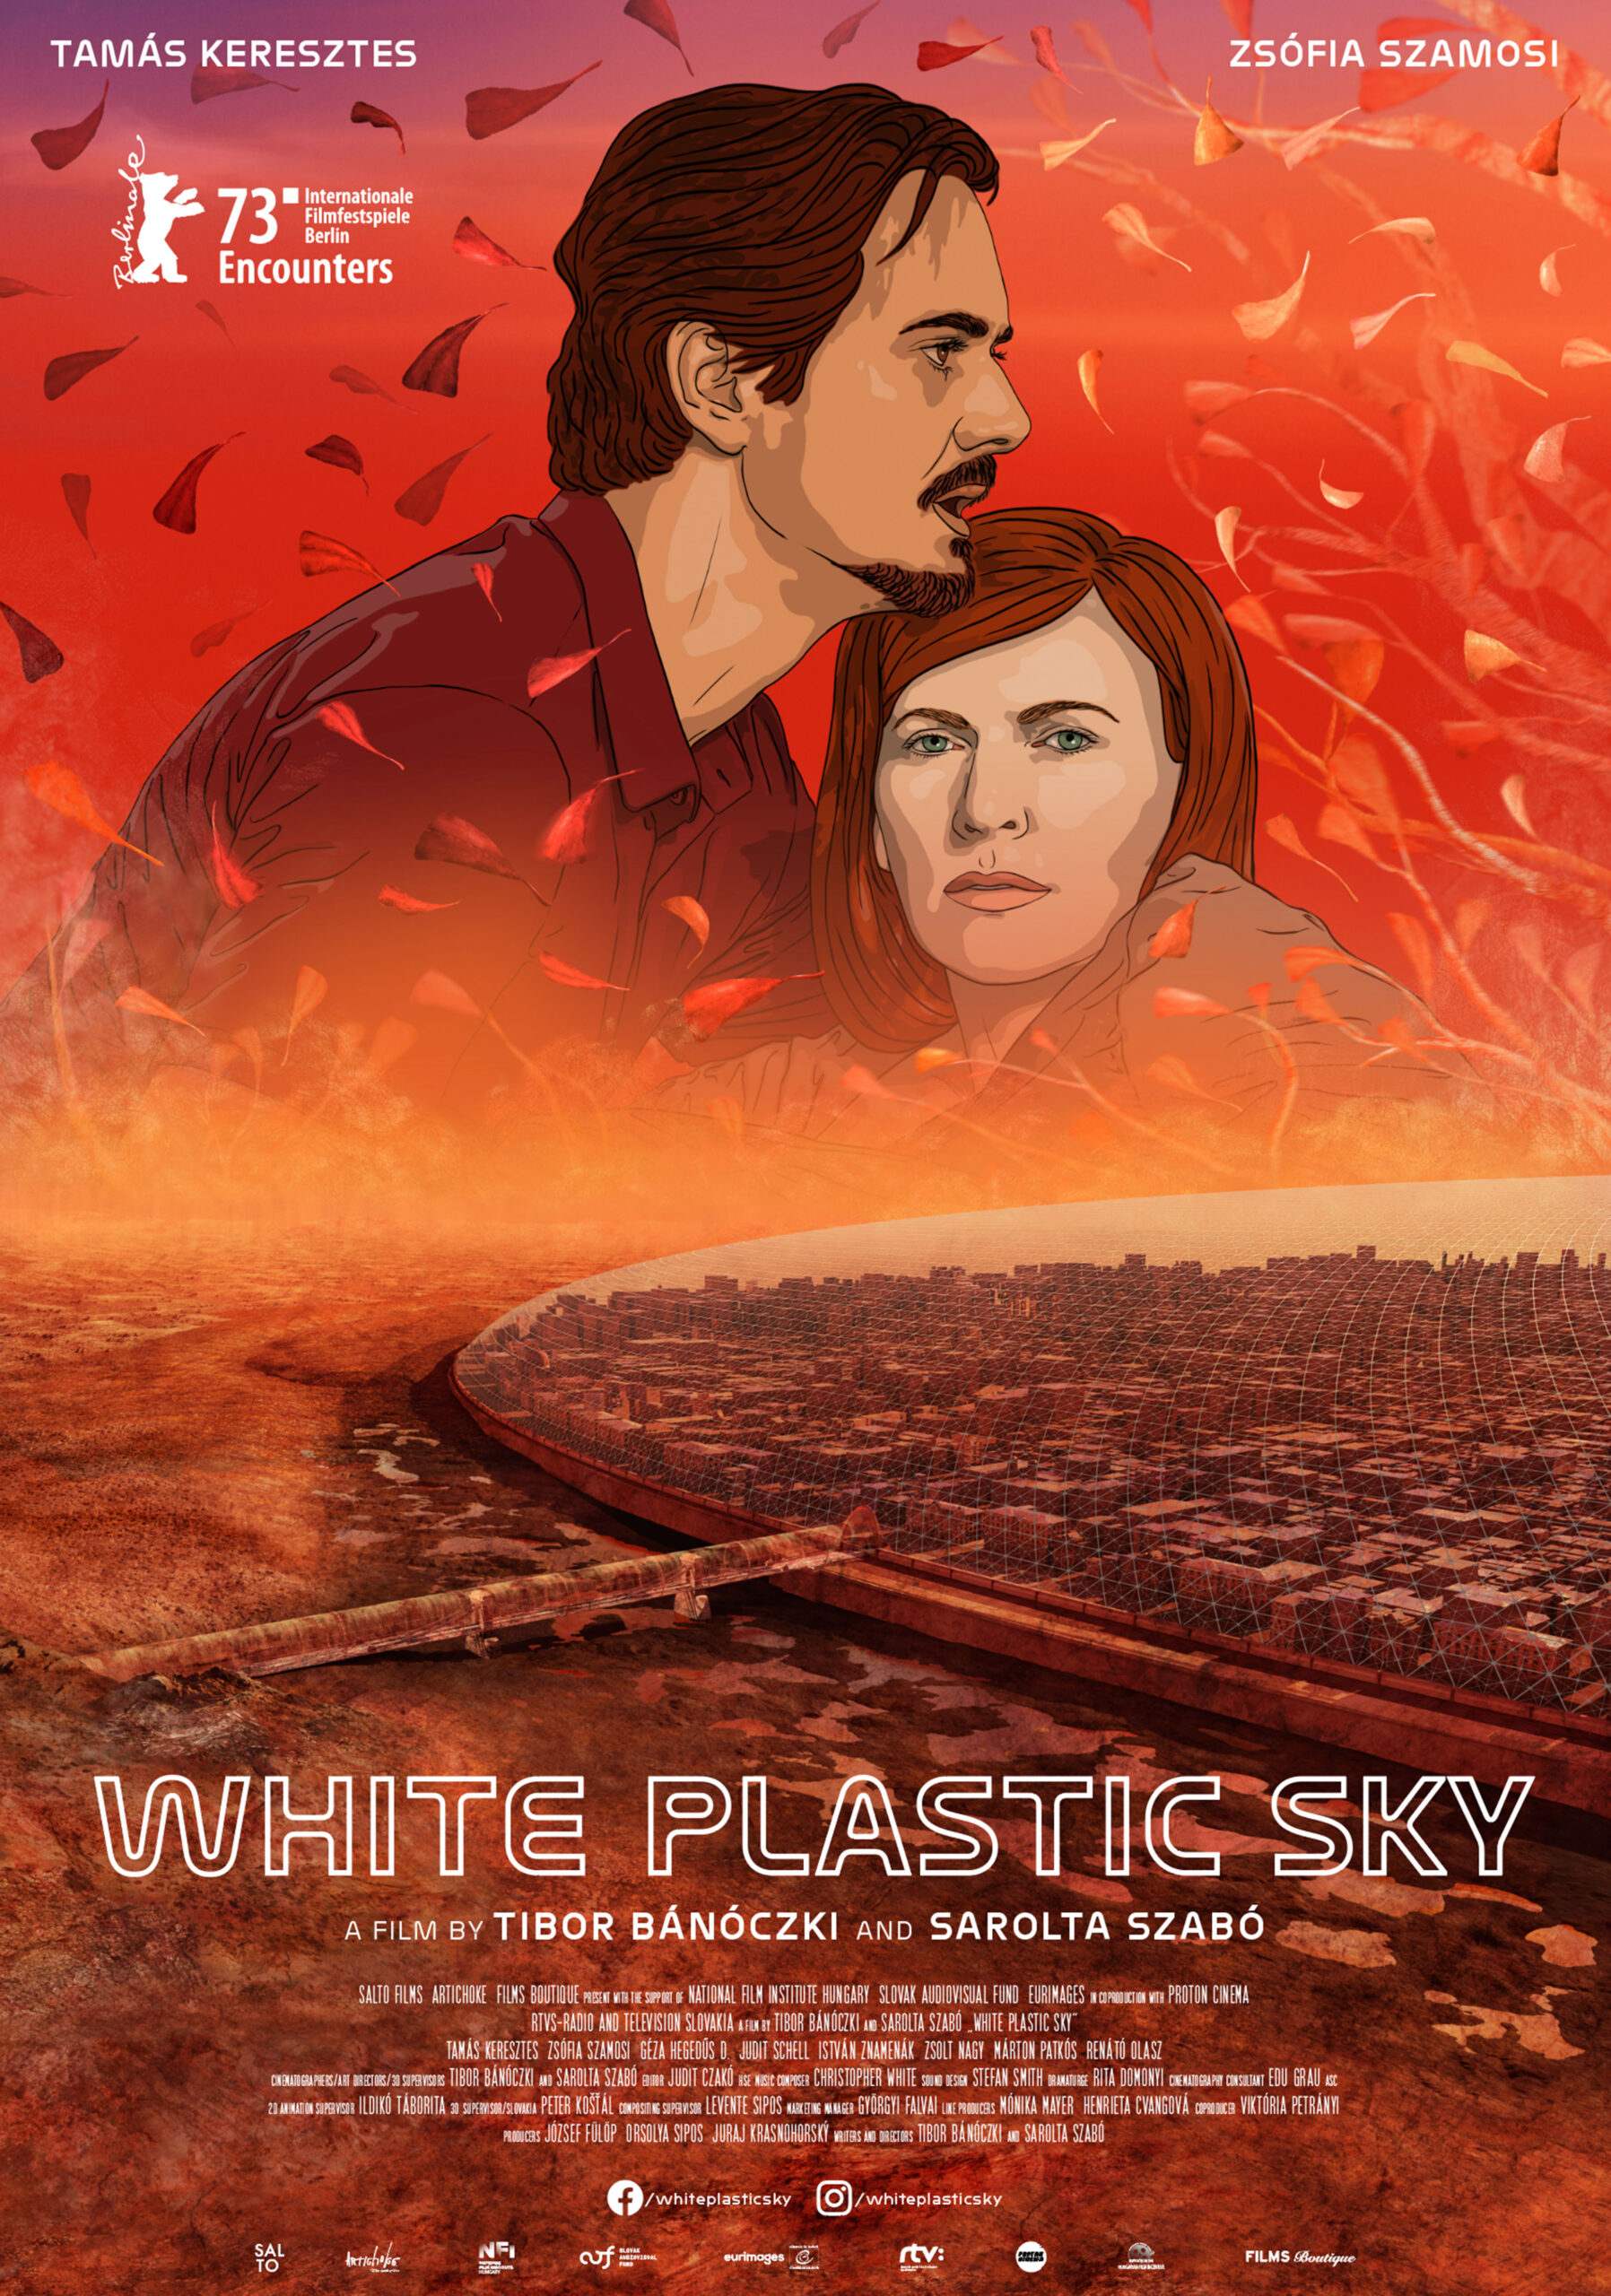 SWhite plastic sky - Filmplakat